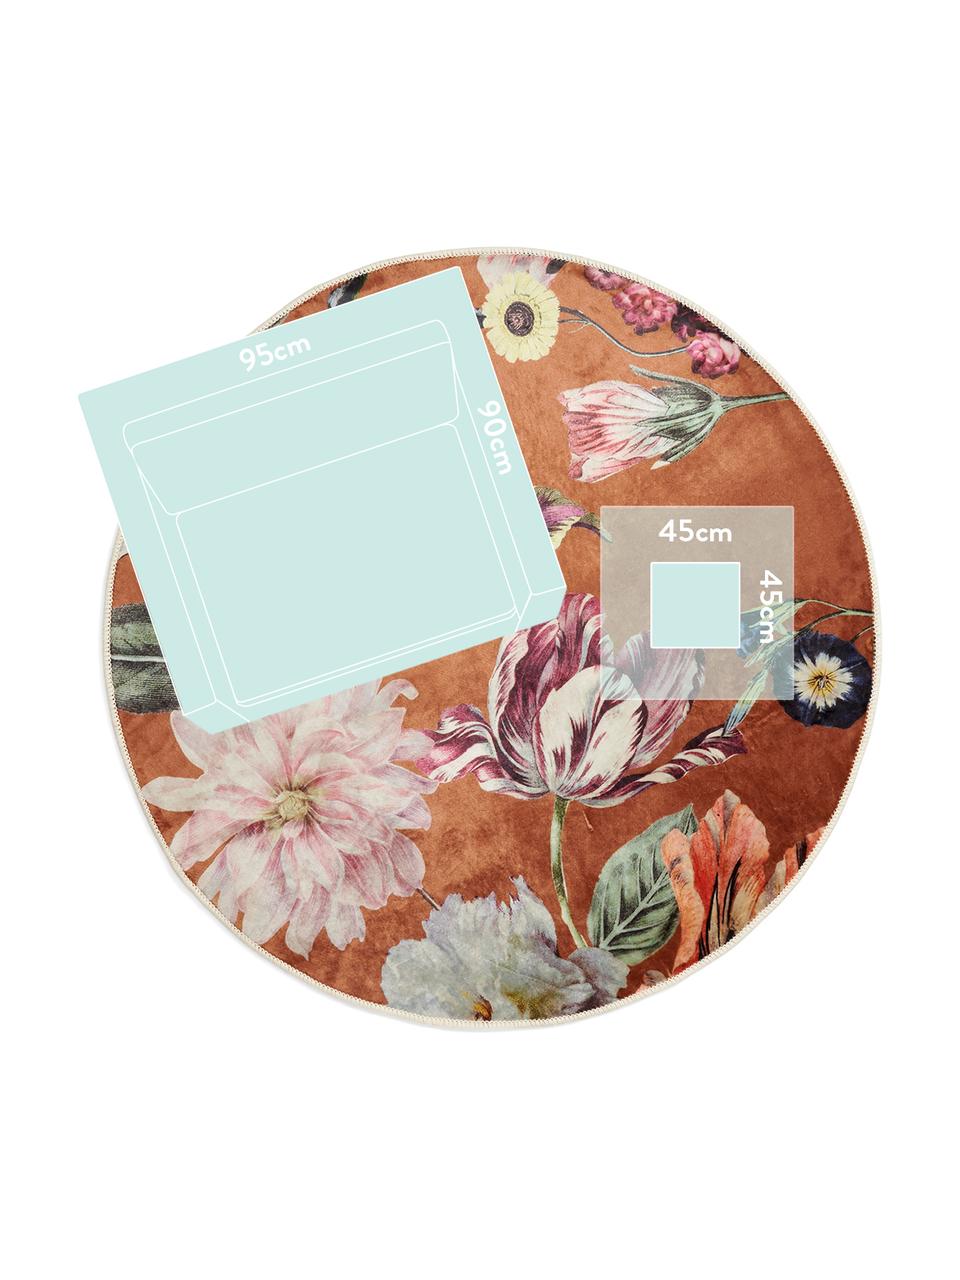 Rond vloerkleed Filou met bloemmotief, 60% polyester, 30% thermoplastisch polyurethaan, 10% katoen, Karamelbruin, multicolour, Ø 180 cm (maat L)